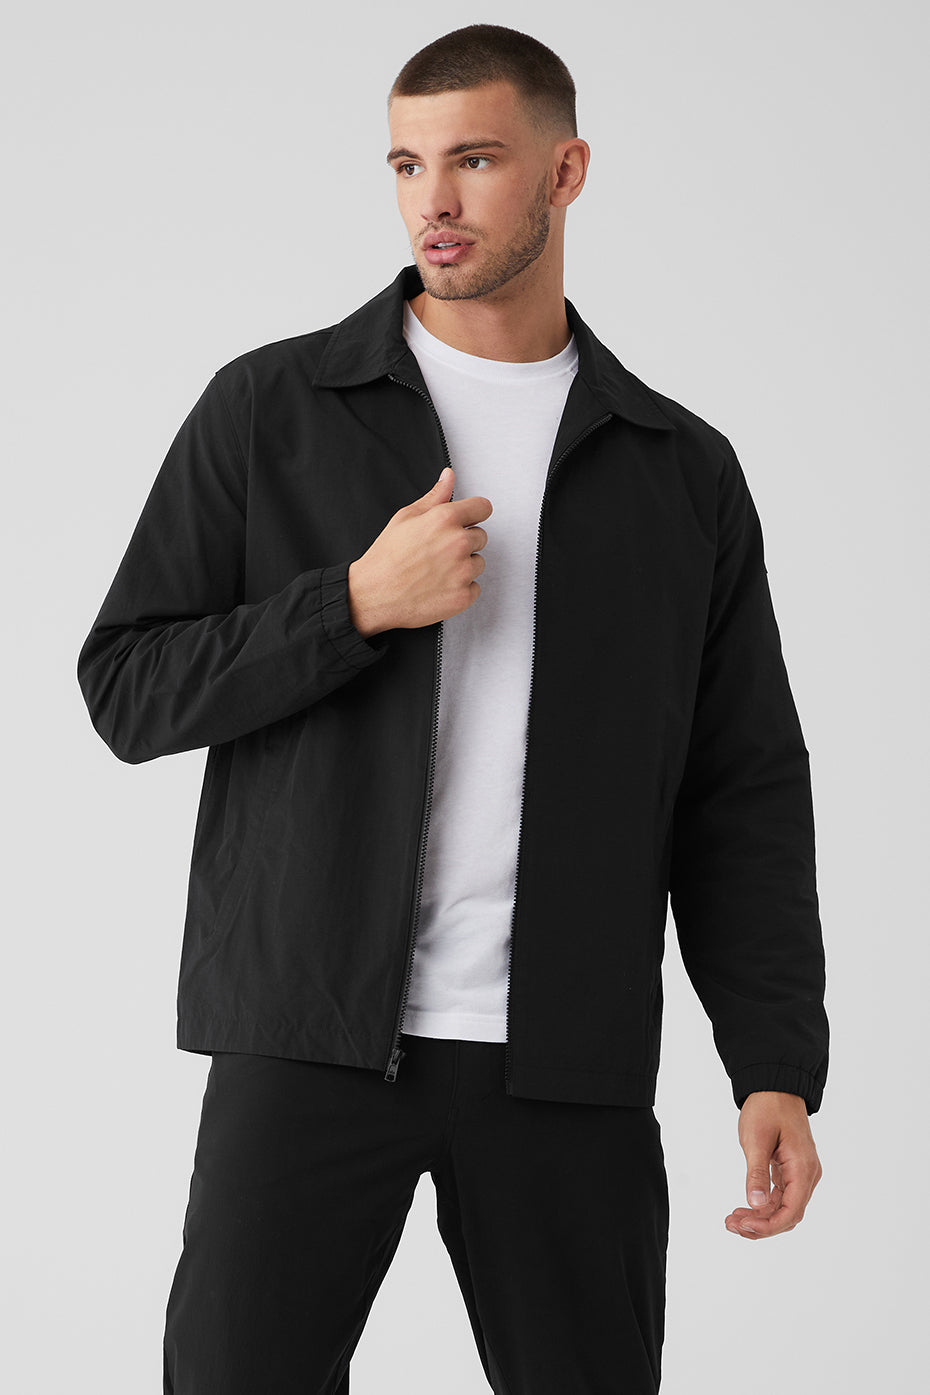 Alo Yoga Sherpa Edge Shacket Jacket in Black, Size: Large